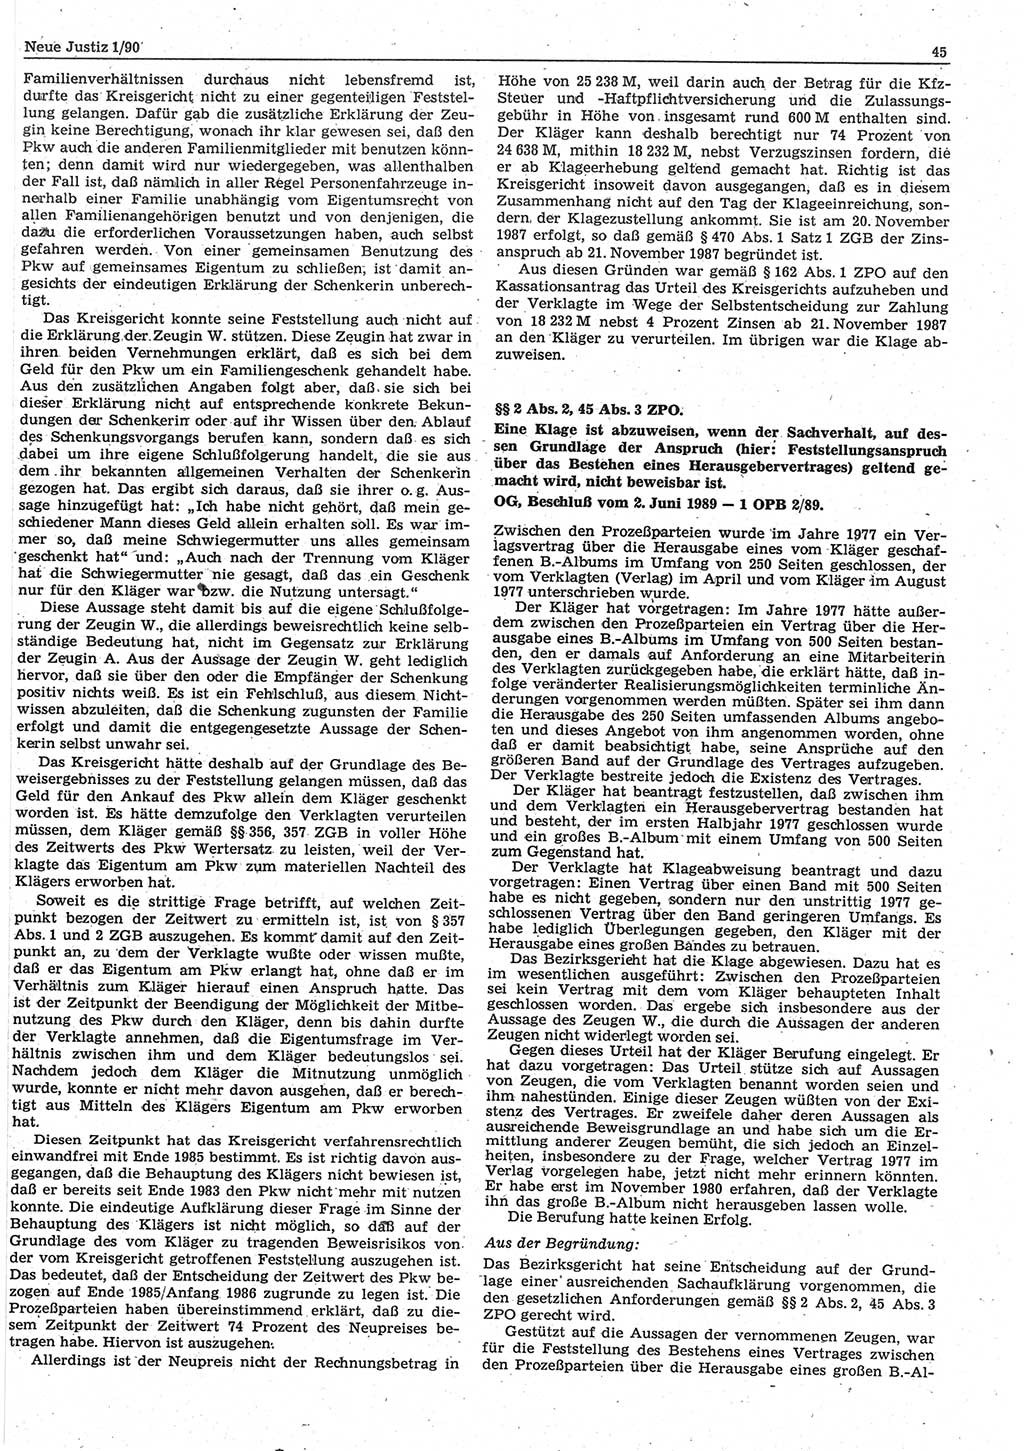 Neue Justiz (NJ), Zeitschrift für Rechtsetzung und Rechtsanwendung [Deutsche Demokratische Republik (DDR)], 44. Jahrgang 1990, Seite 45 (NJ DDR 1990, S. 45)